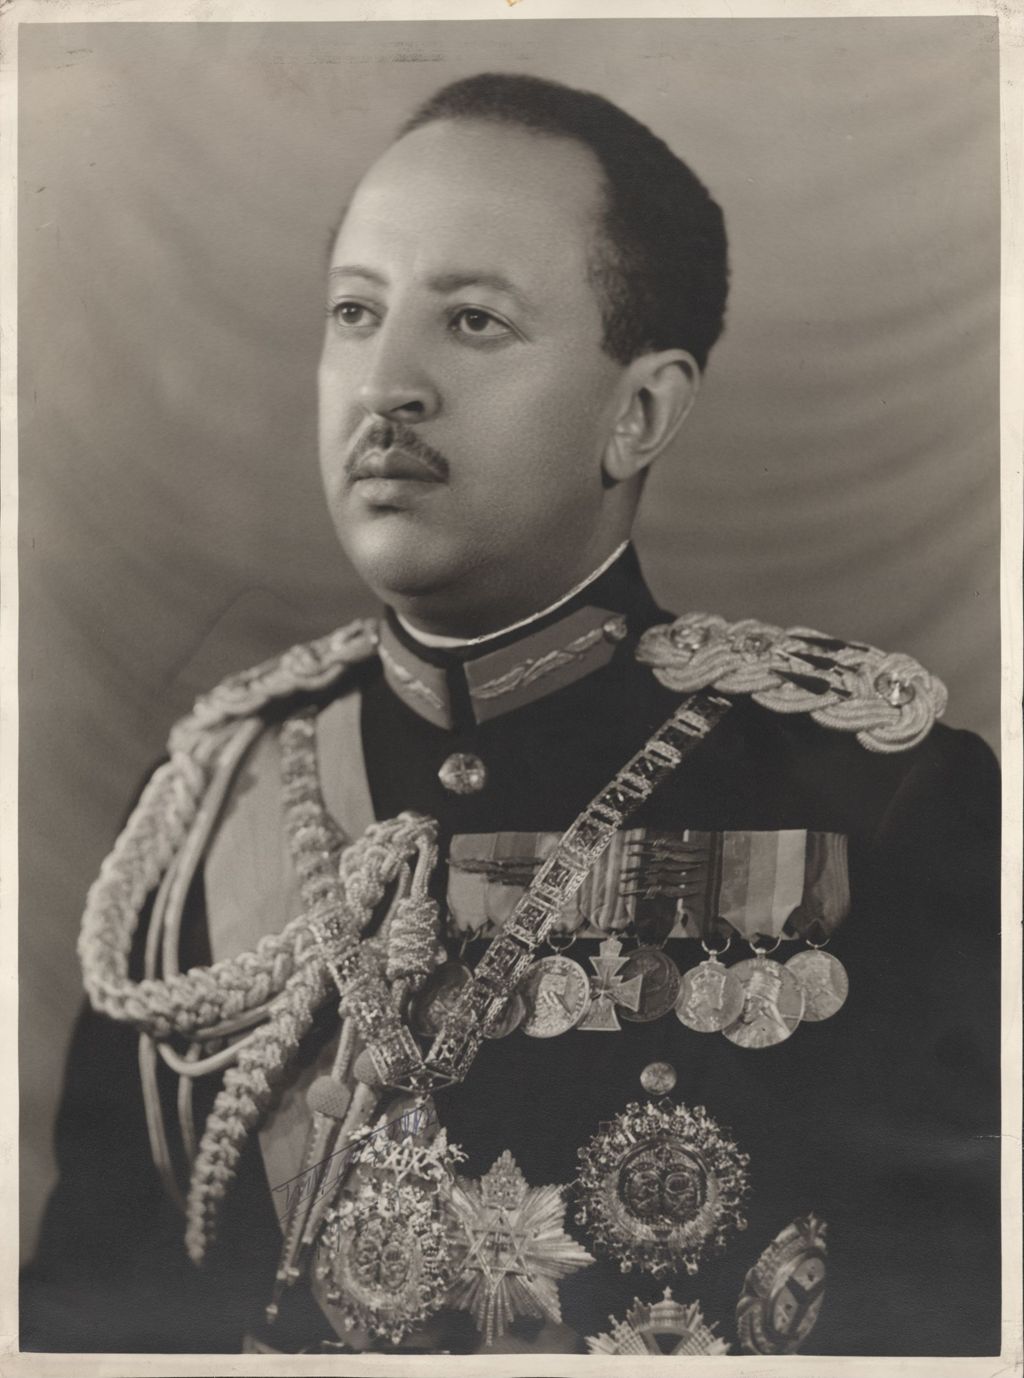 Member of Ethiopian royalty